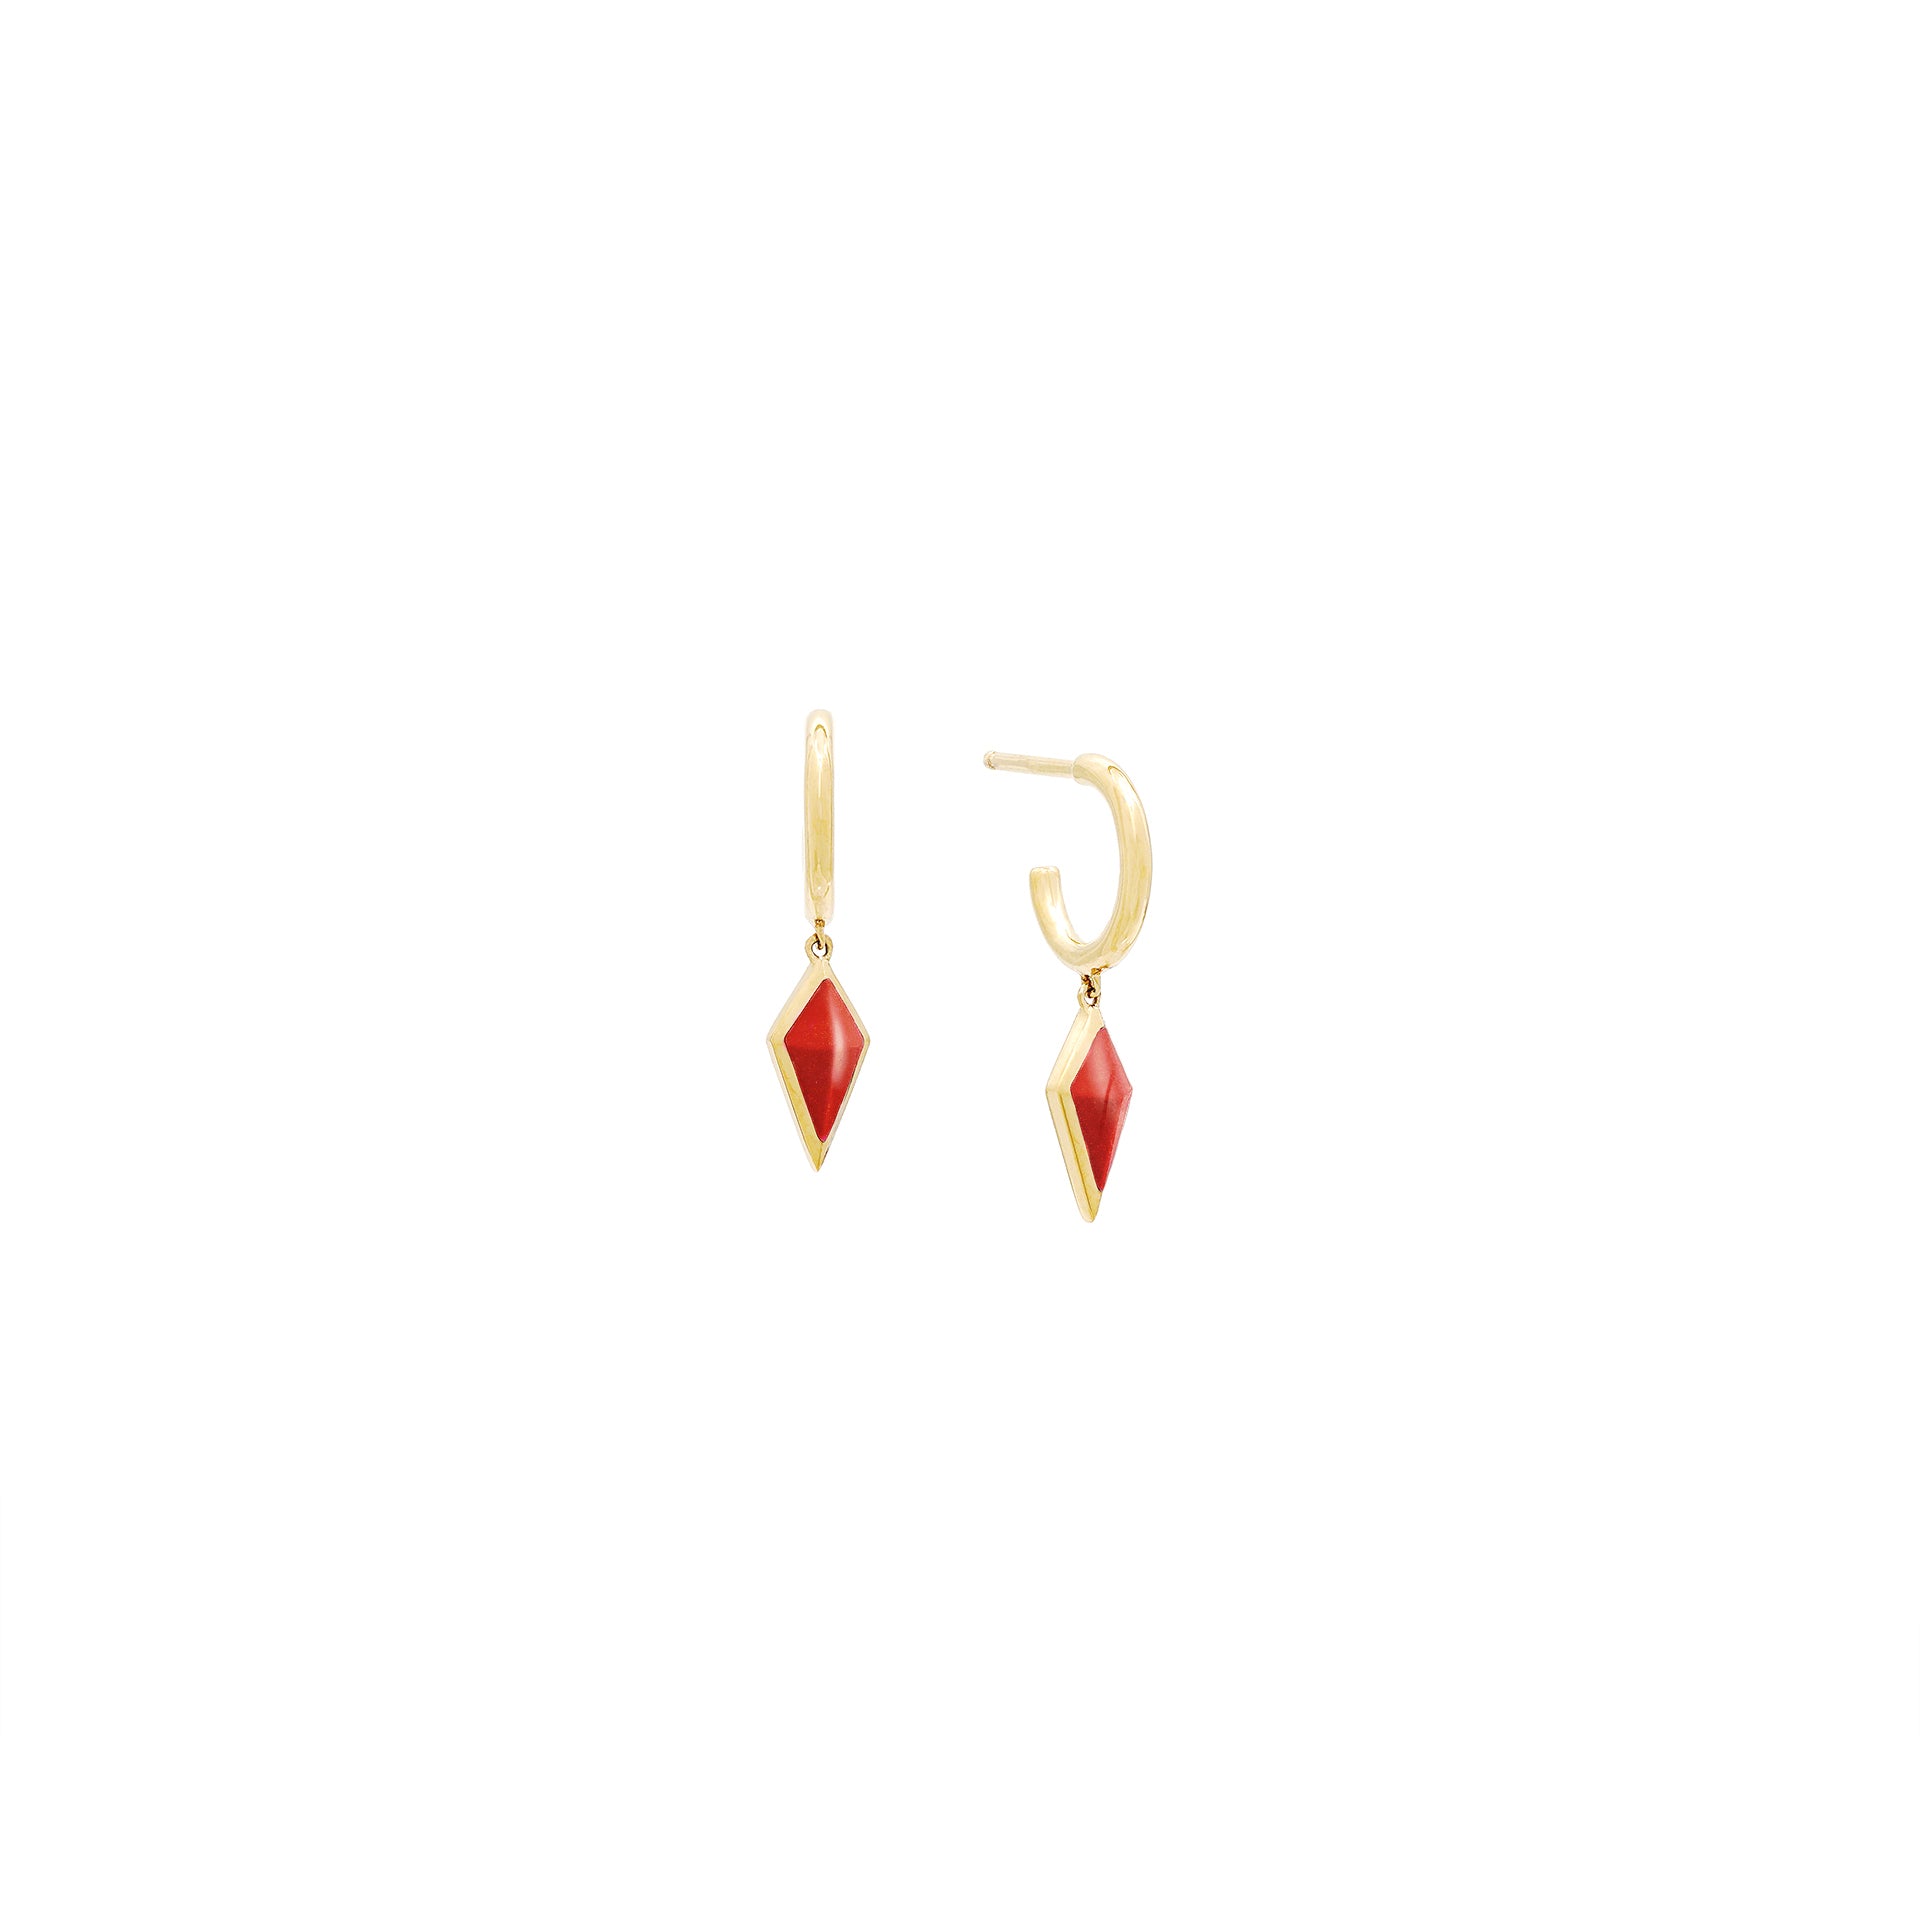 Al Merta’shah Earrings in Red Agate